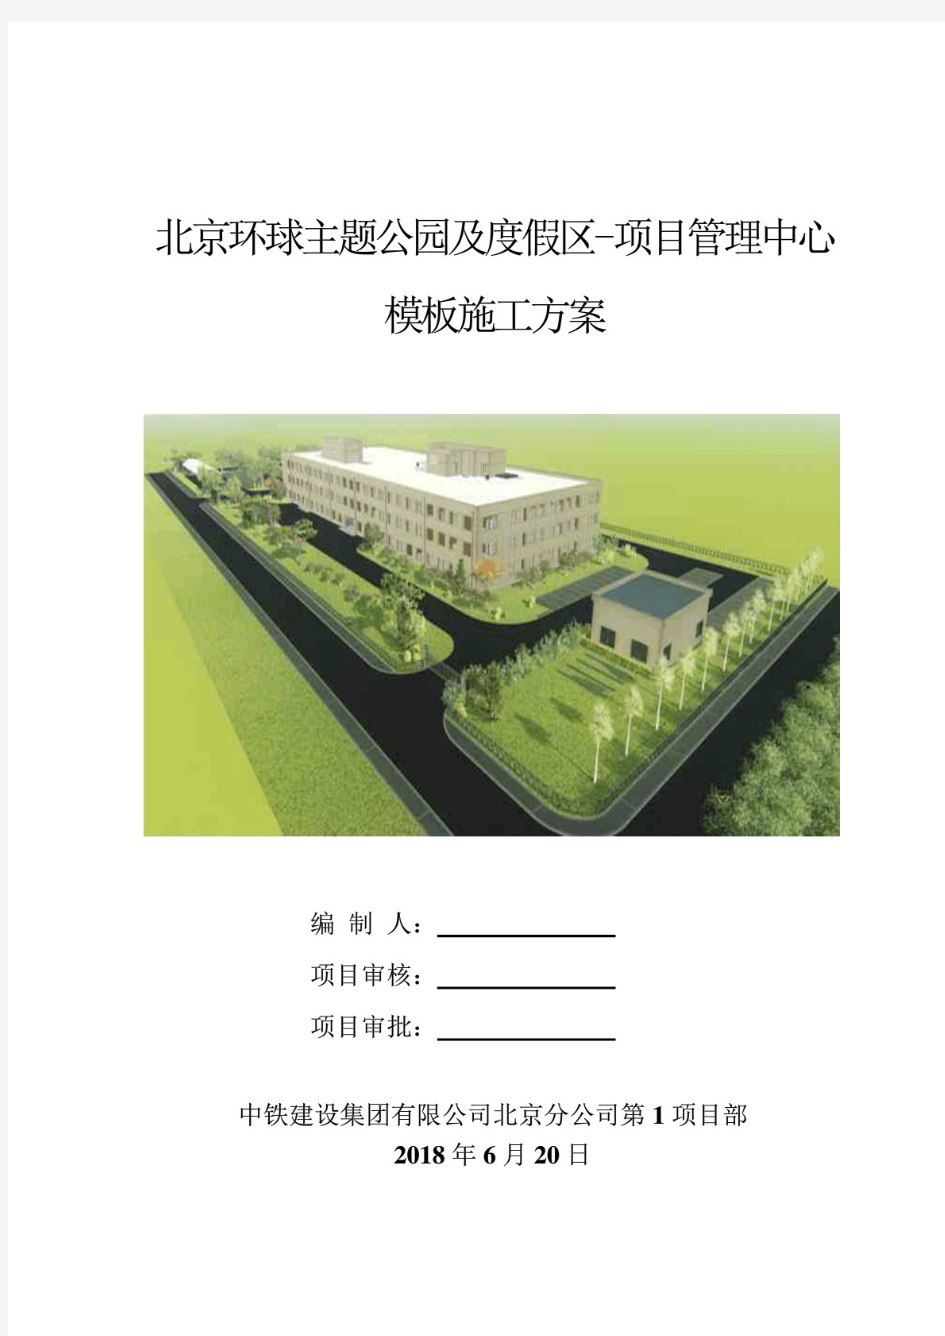 北京环球主题公园及度假区项目管理中心模板施工方案